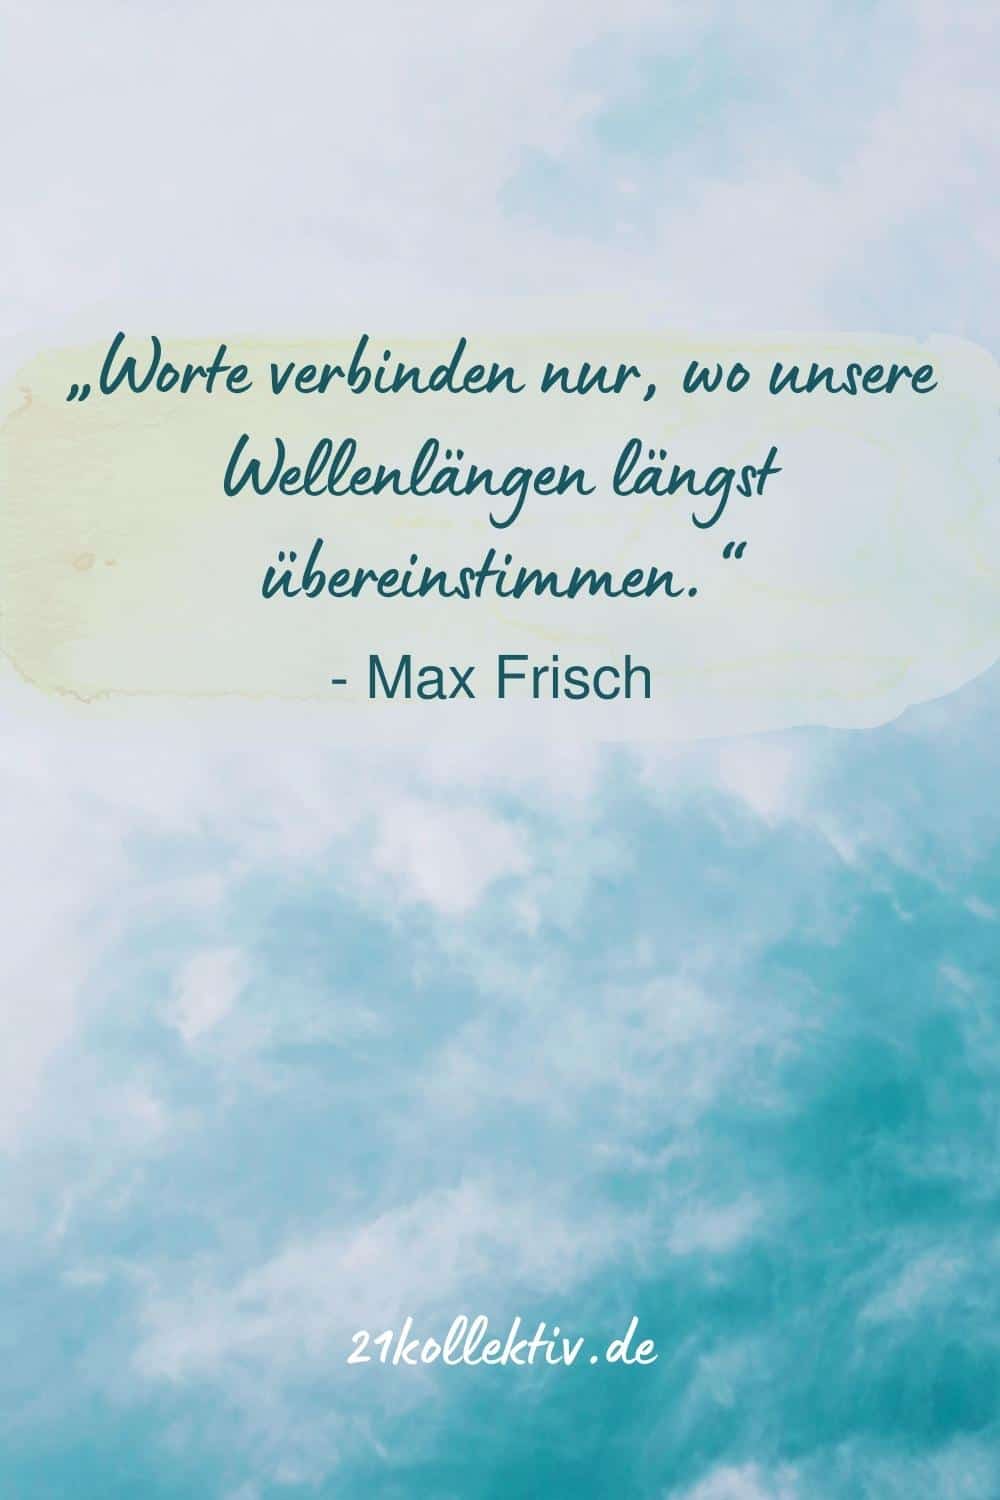 „Worte verbinden nur, wo unsere Wellenlängen längst übereinstimmen.“ (Max Frisch)